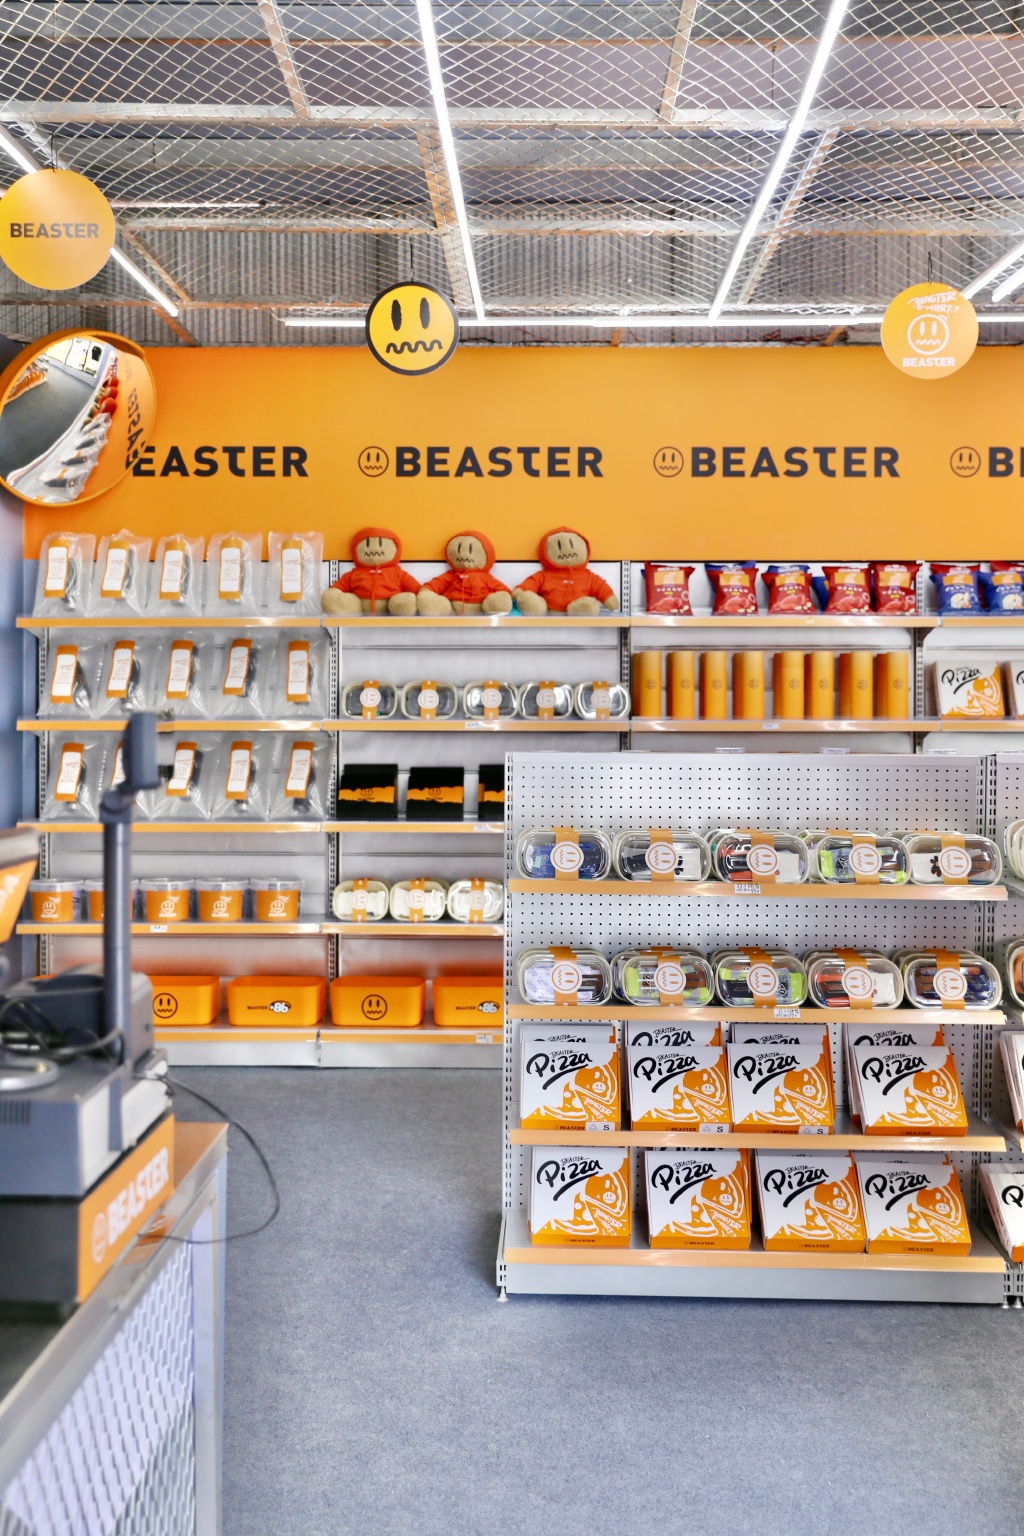 目前beaster在杭州等7个城市内共开设有13家自营门店,部分标杆门店的